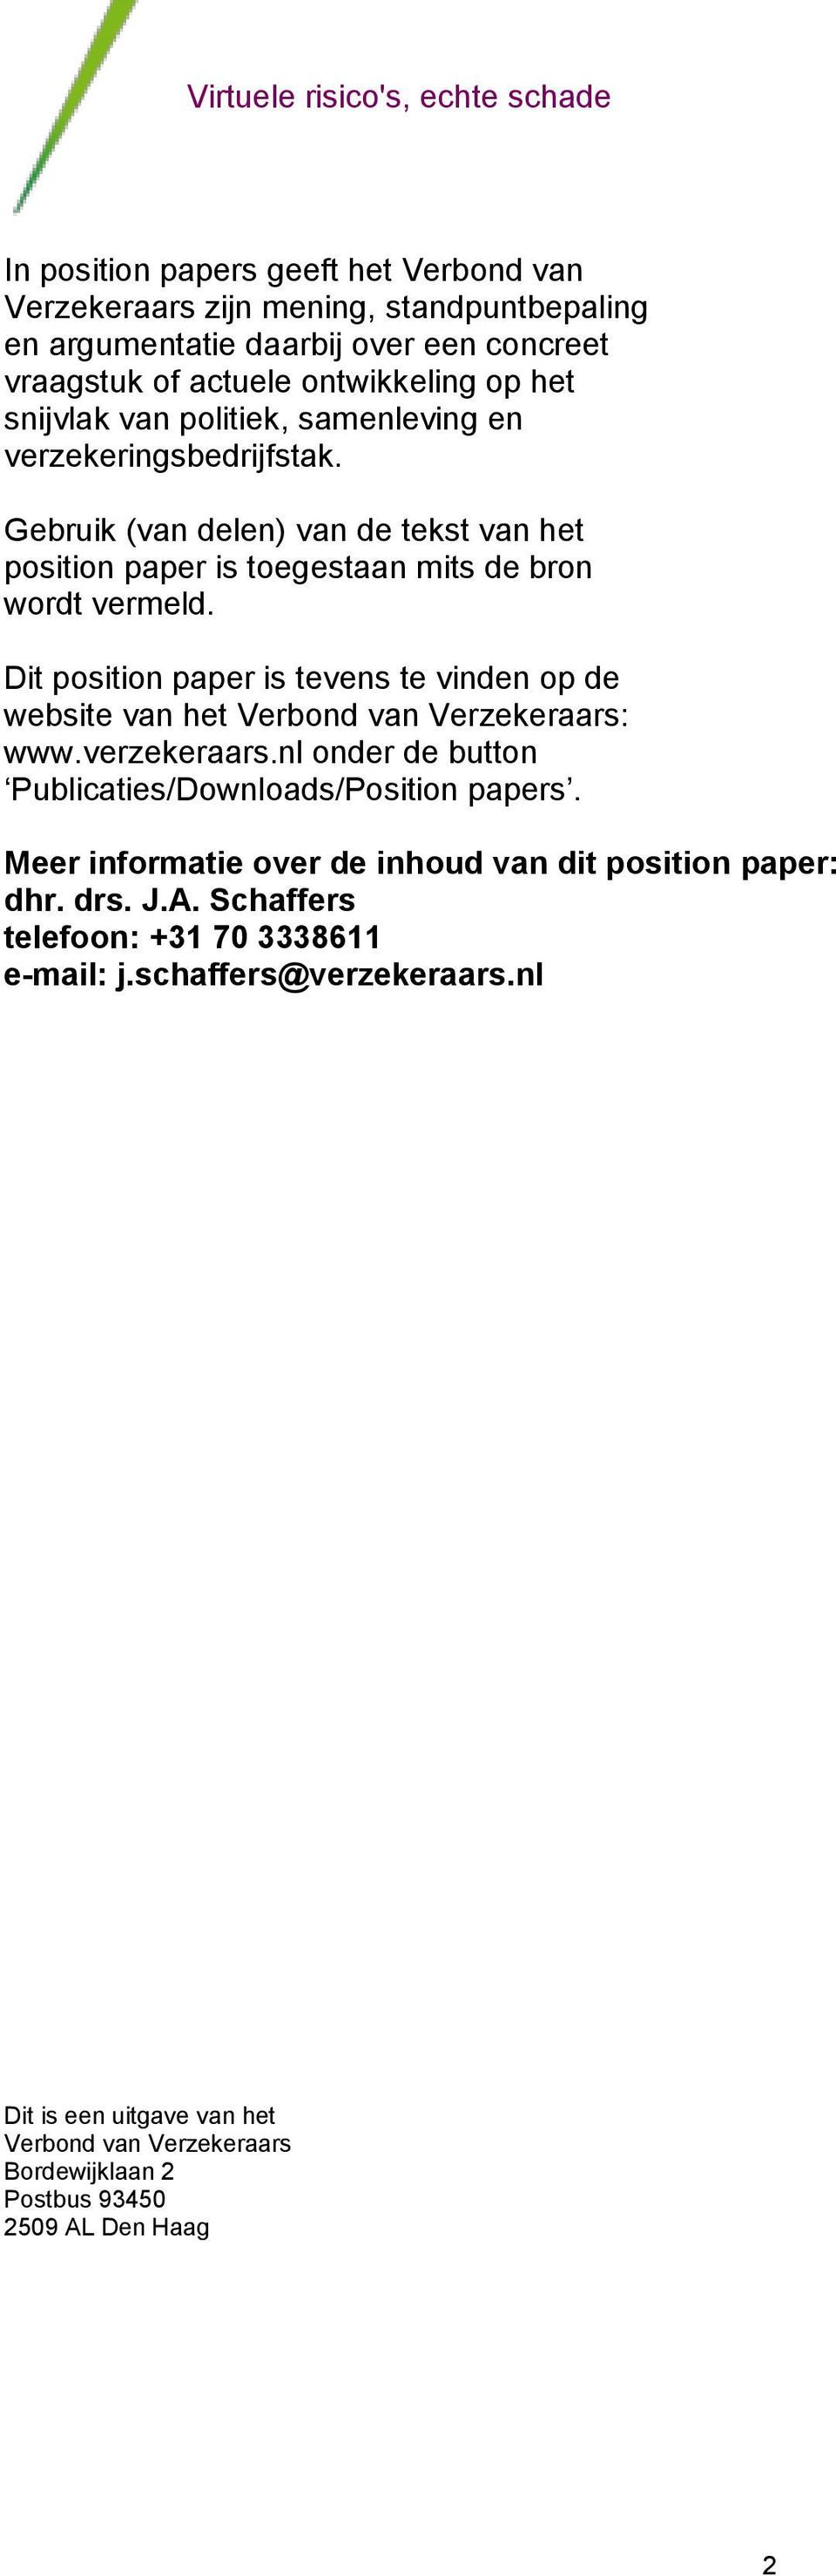 Dit position paper is tevens te vinden op de website van het Verbond van Verzekeraars: www.verzekeraars.nl onder de button Publicaties/Downloads/Position papers.